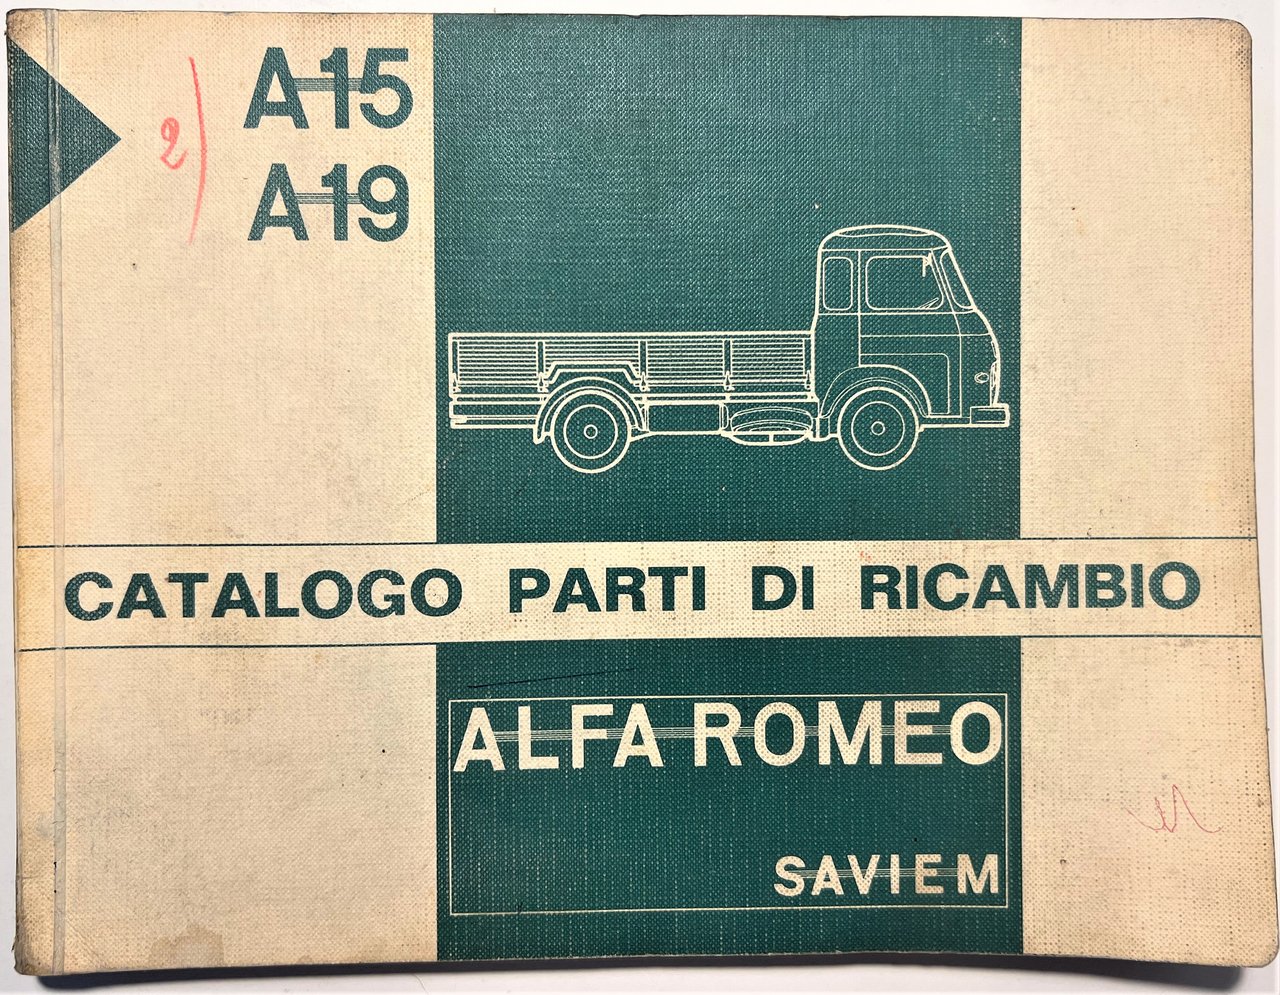 Catalogo Parti di Ricambio - Alfa Romeo Saviem - A.15 …